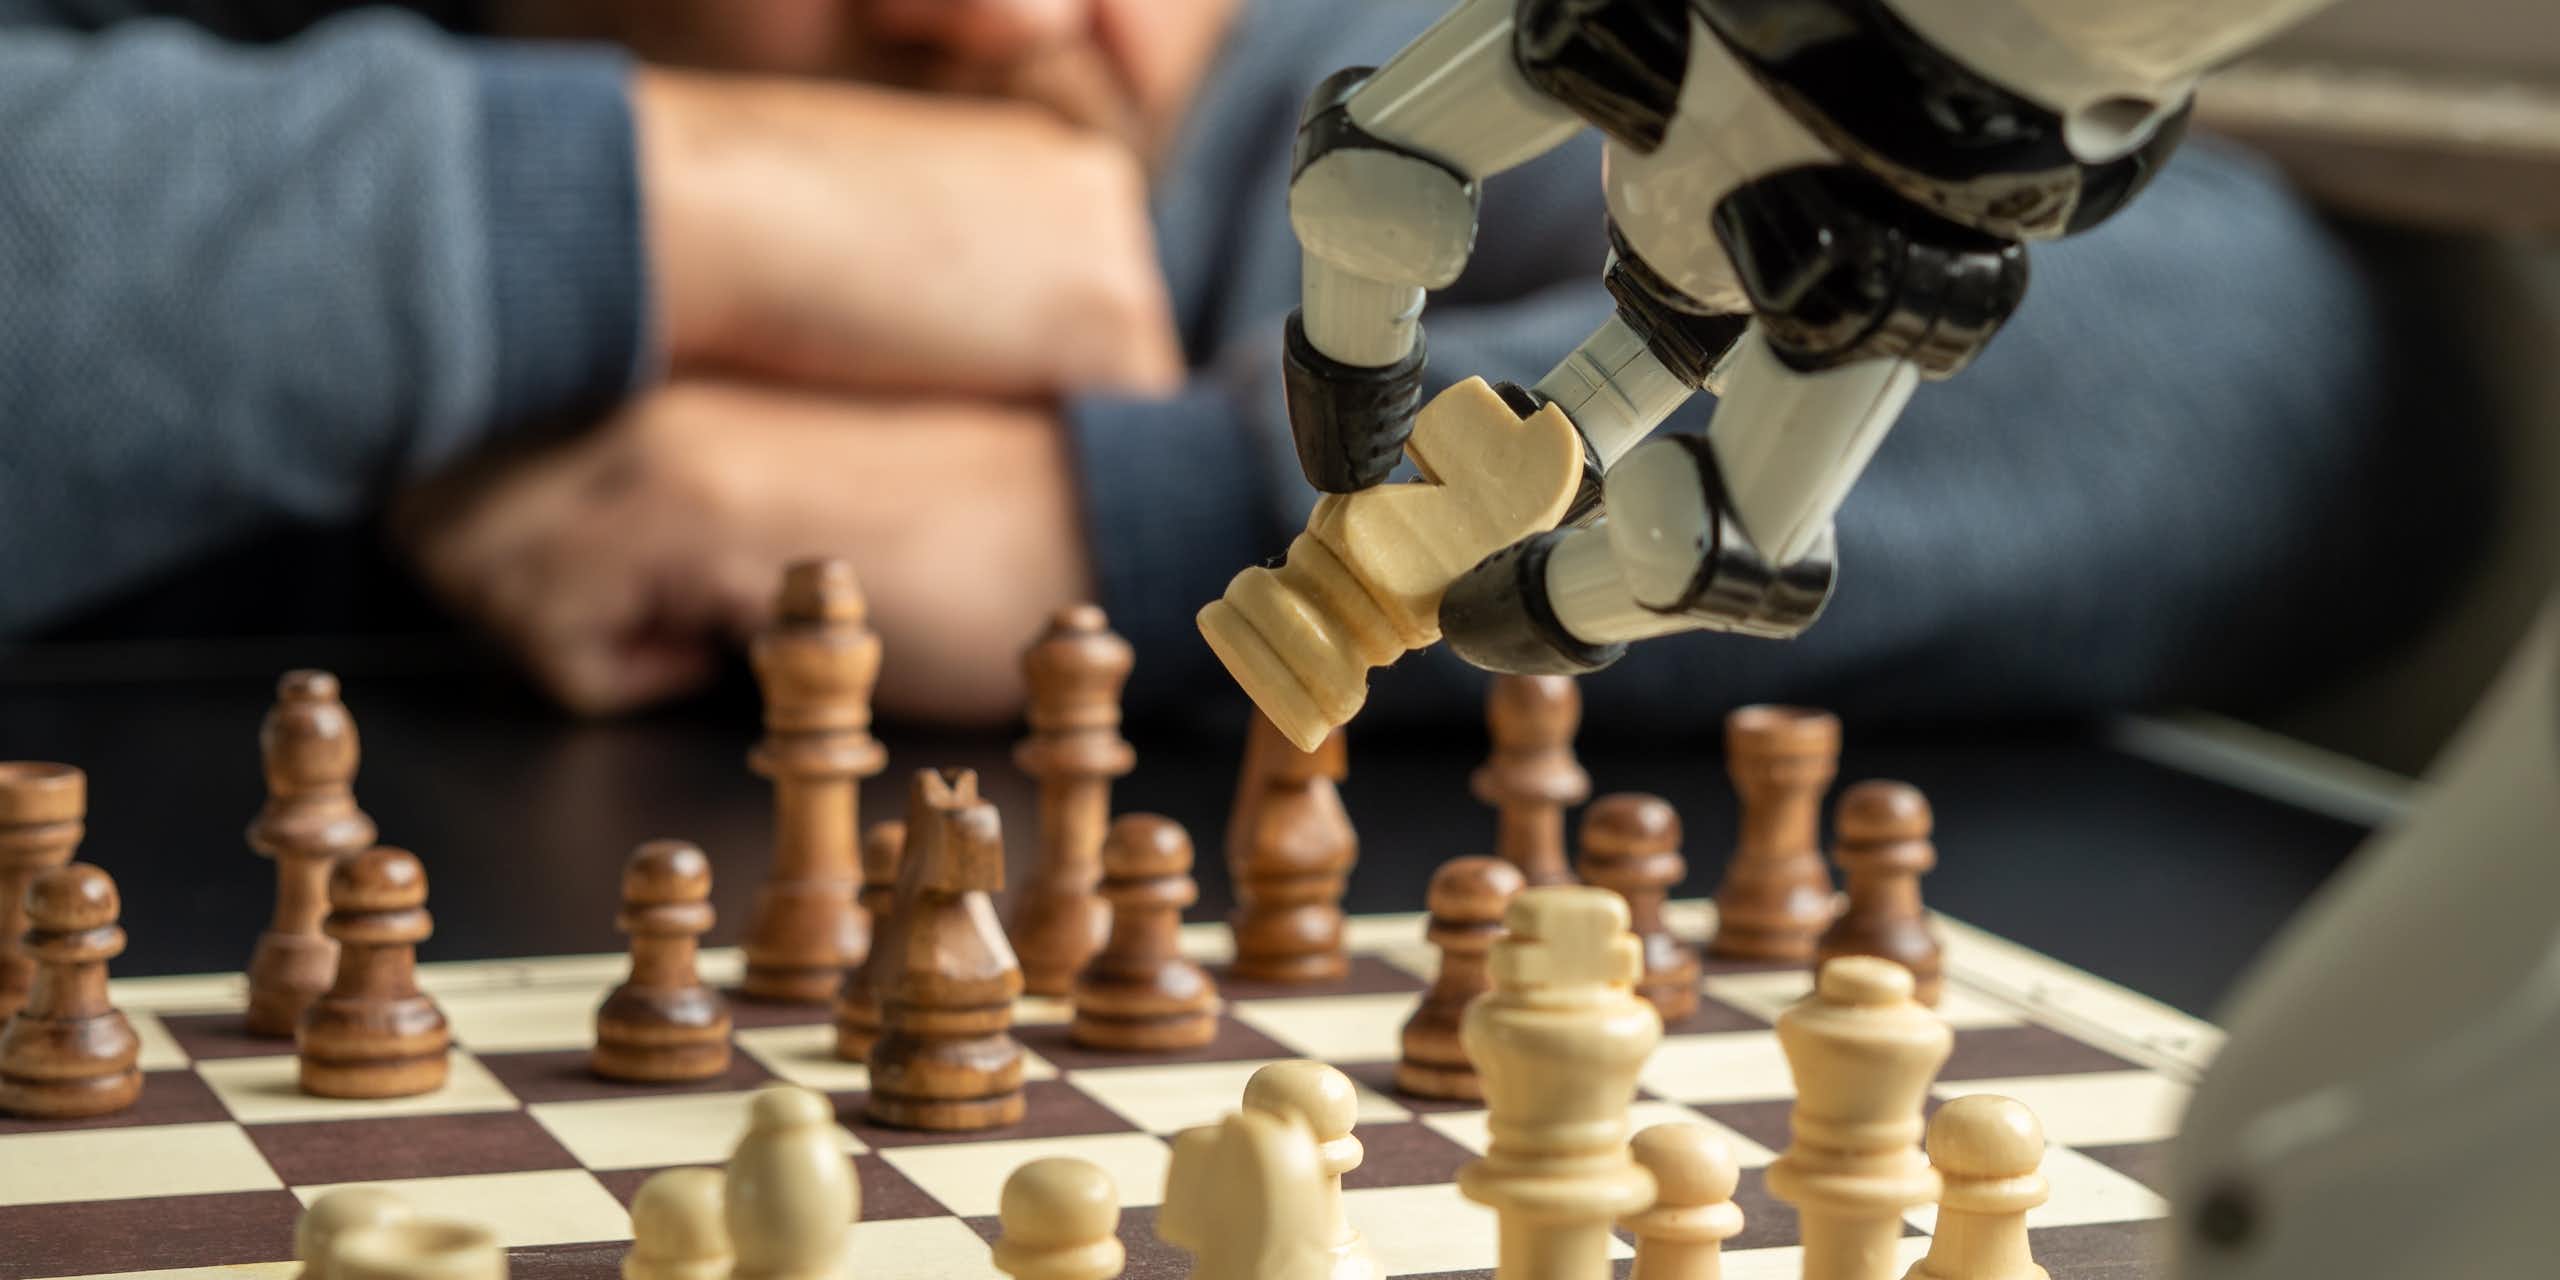 Um braço robótico agarra uma peça de xadrez em um jogo contra um humano